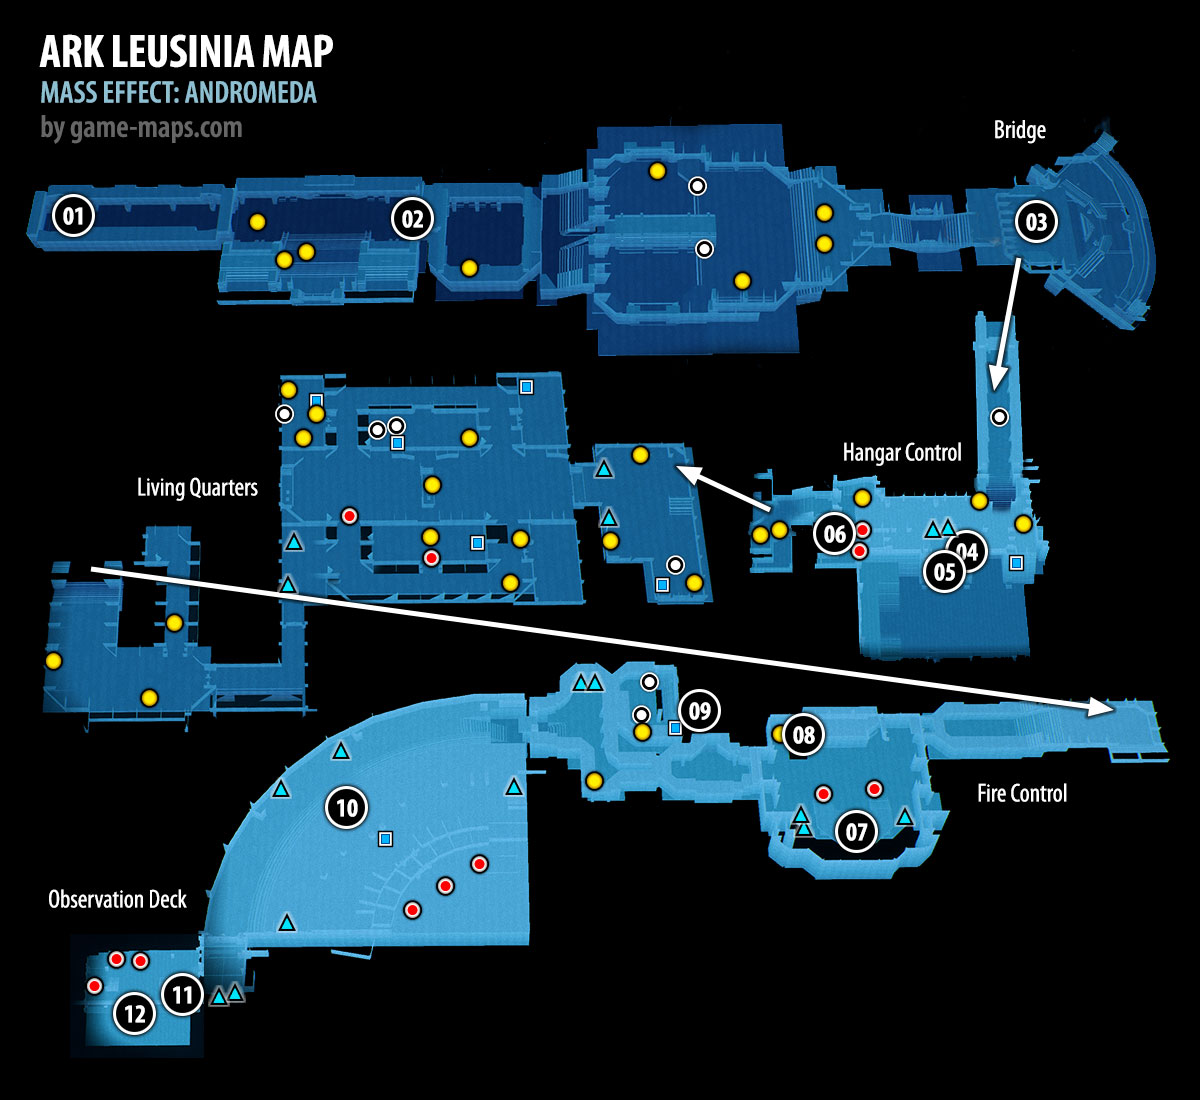 Ark Leusinia Map for Mass Effect Andromeda